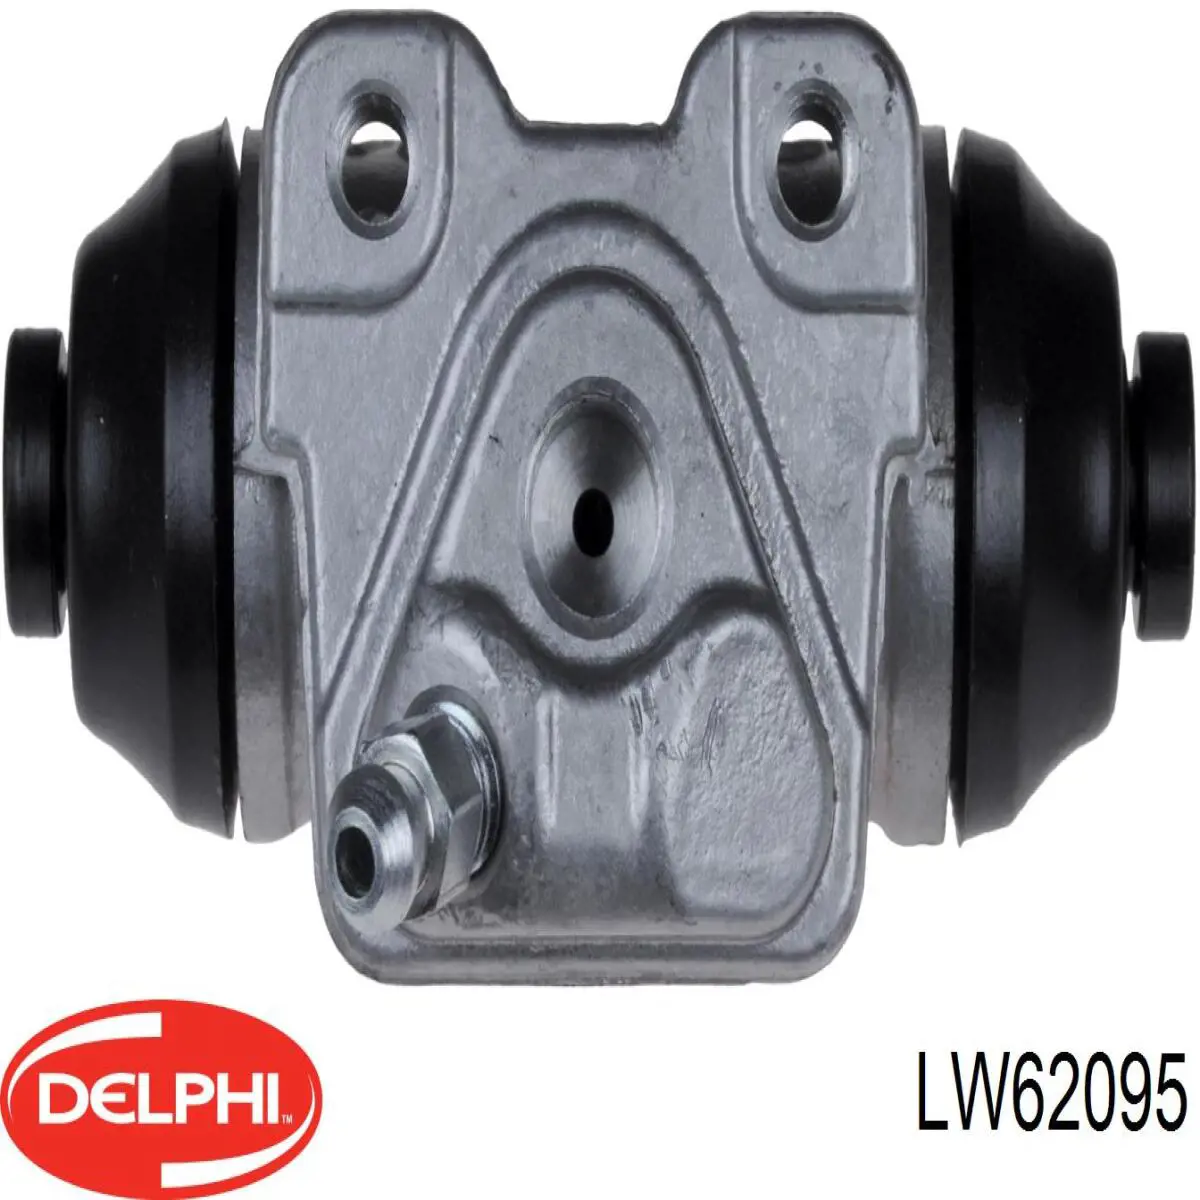 LW62095 Delphi cilindro de freno de rueda trasero